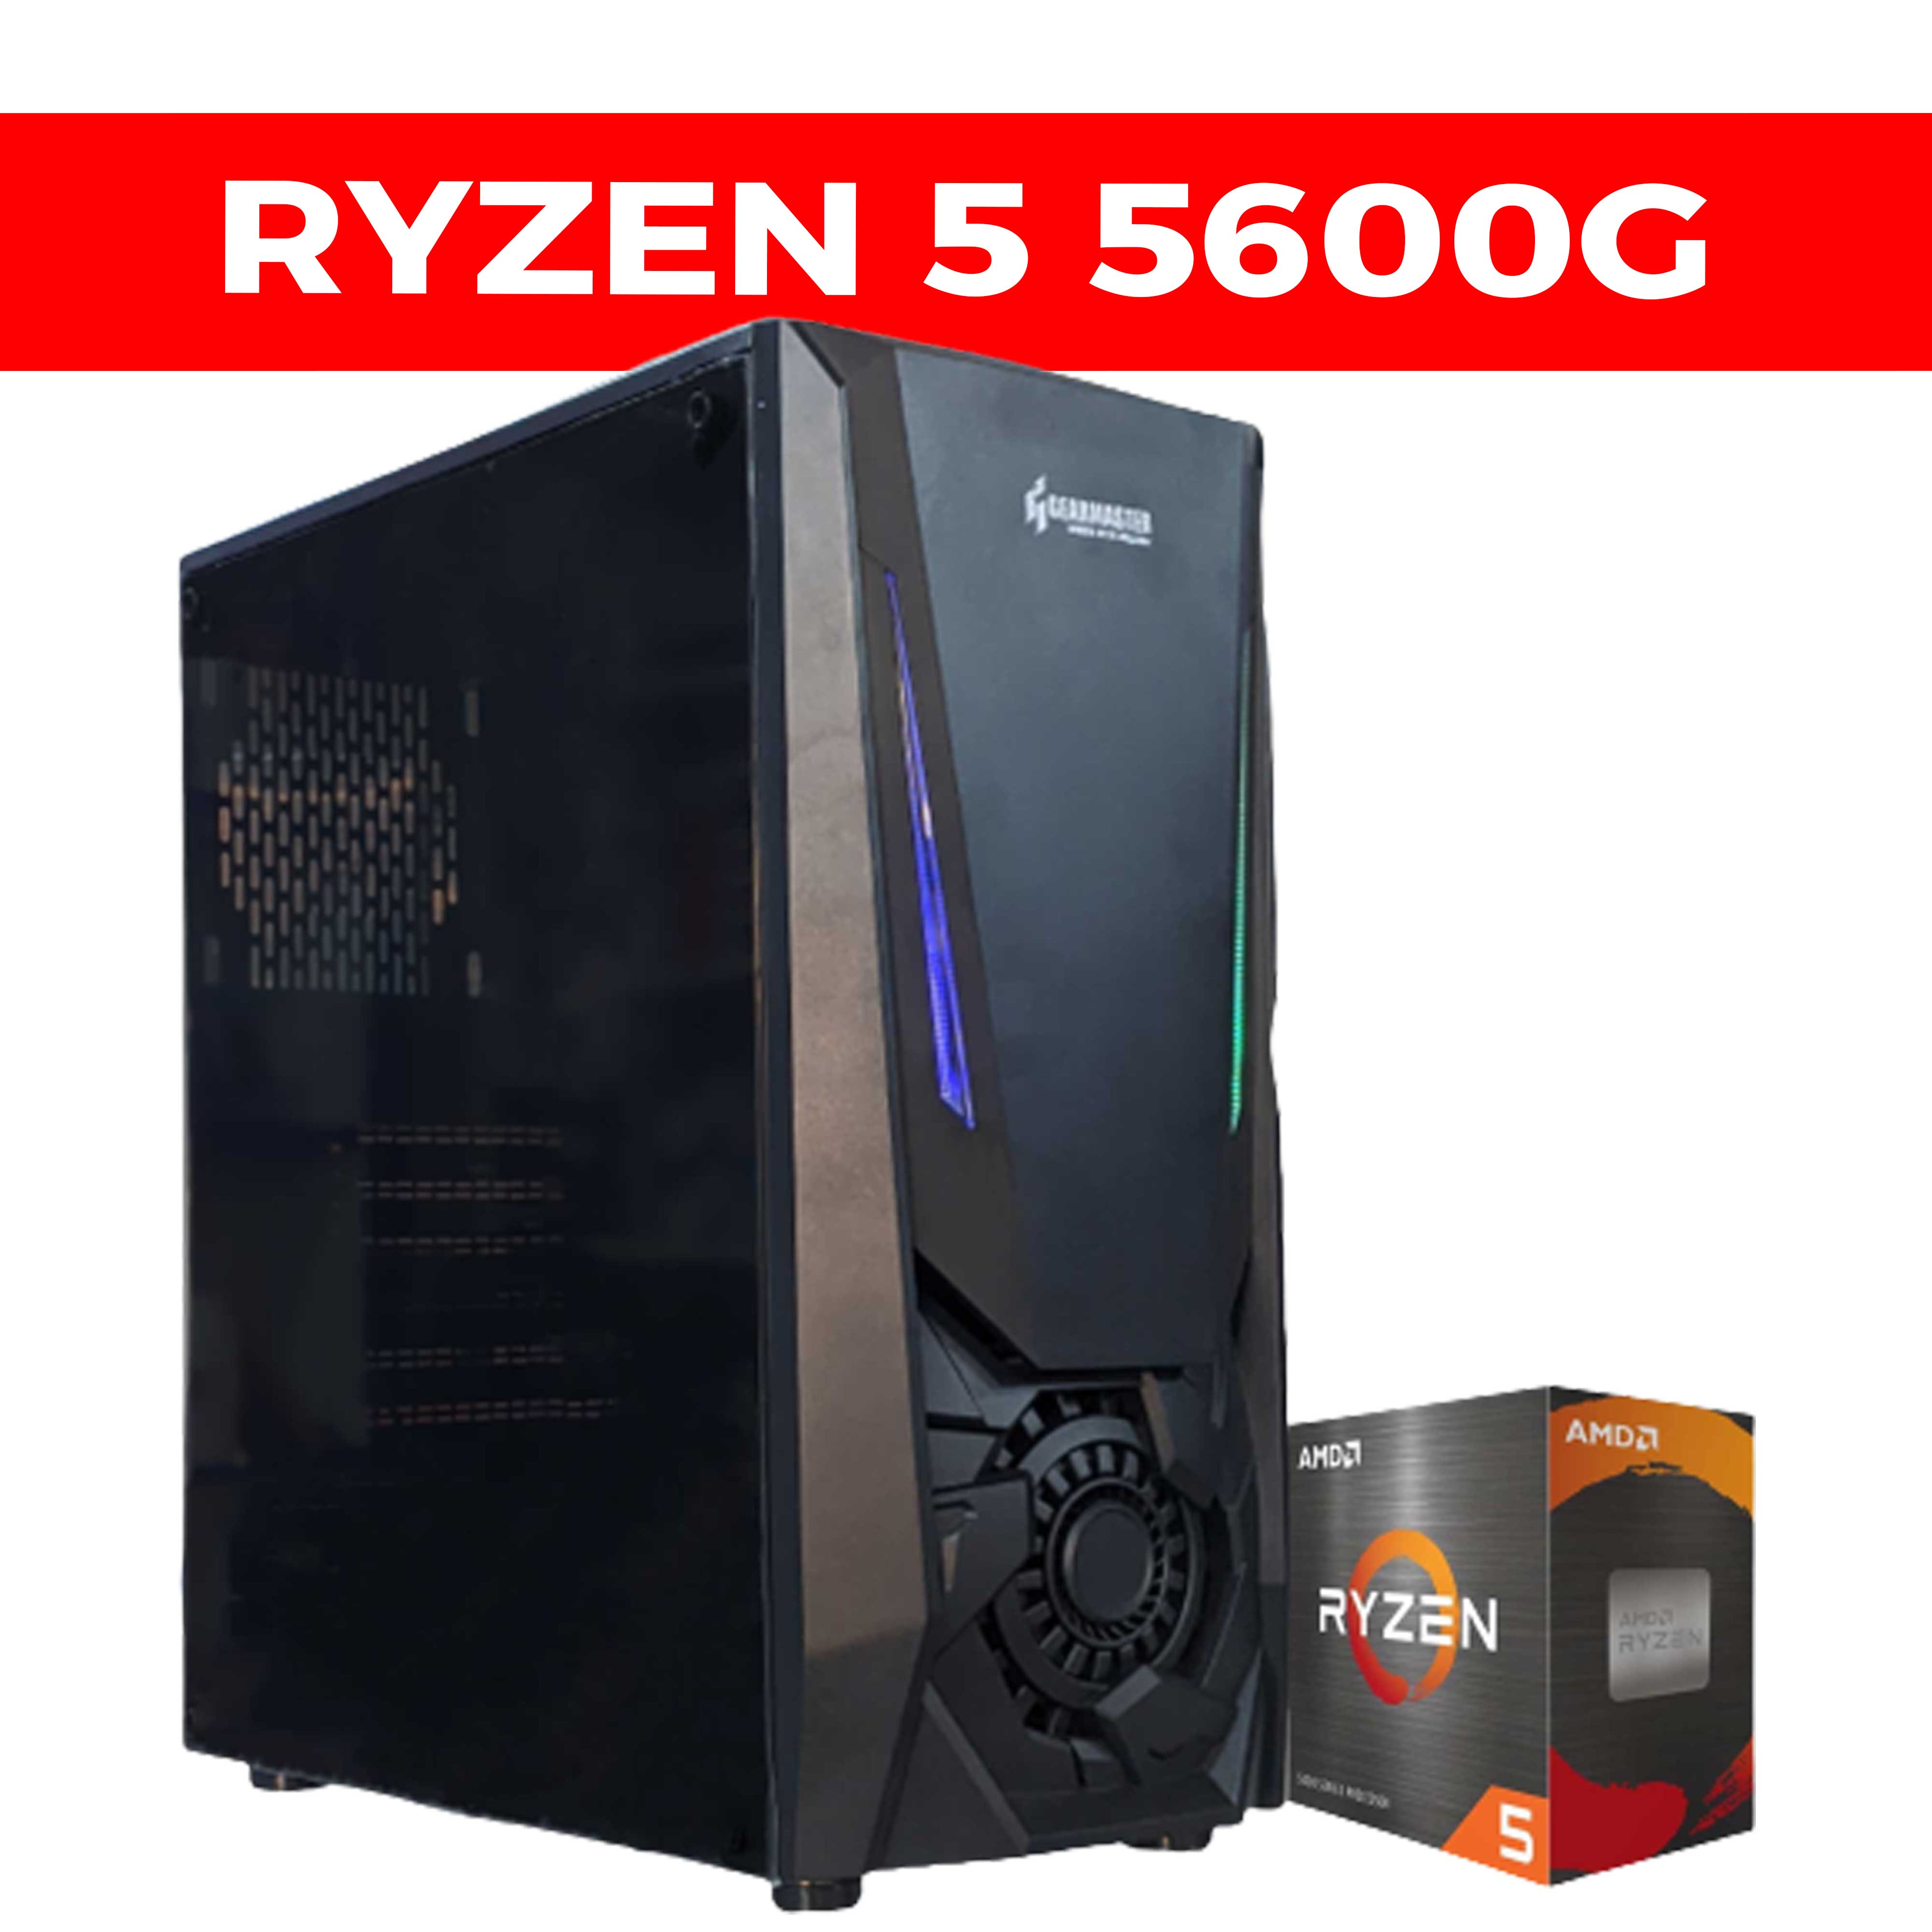 PC GAMER RYZEN 5 5600G - STS Informatique DZ